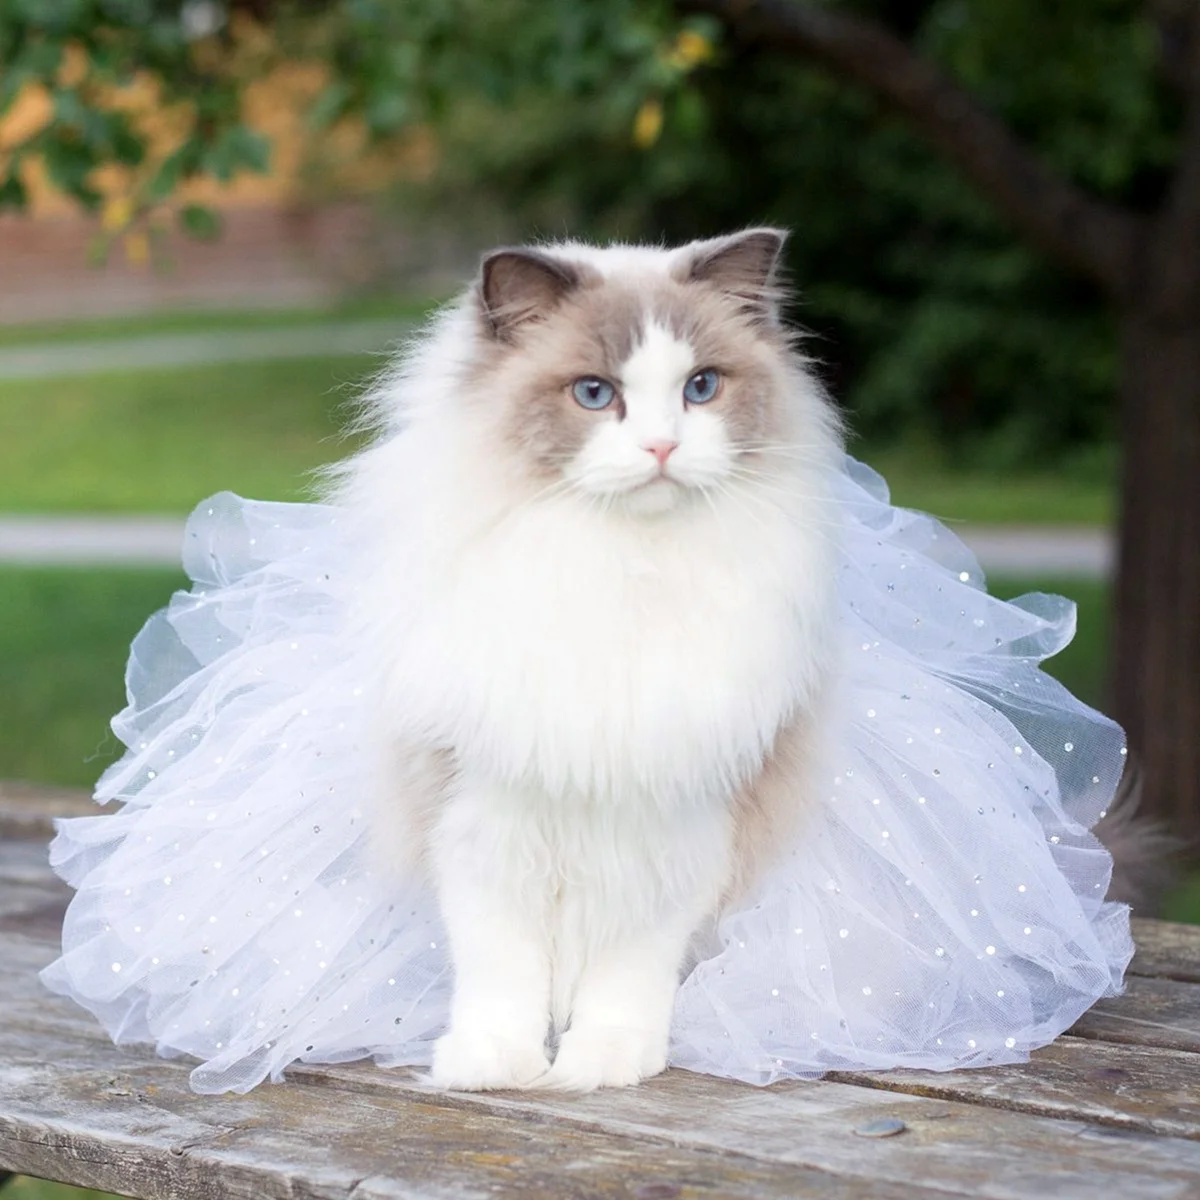 Рэгдолл кошка принцесса Аврора